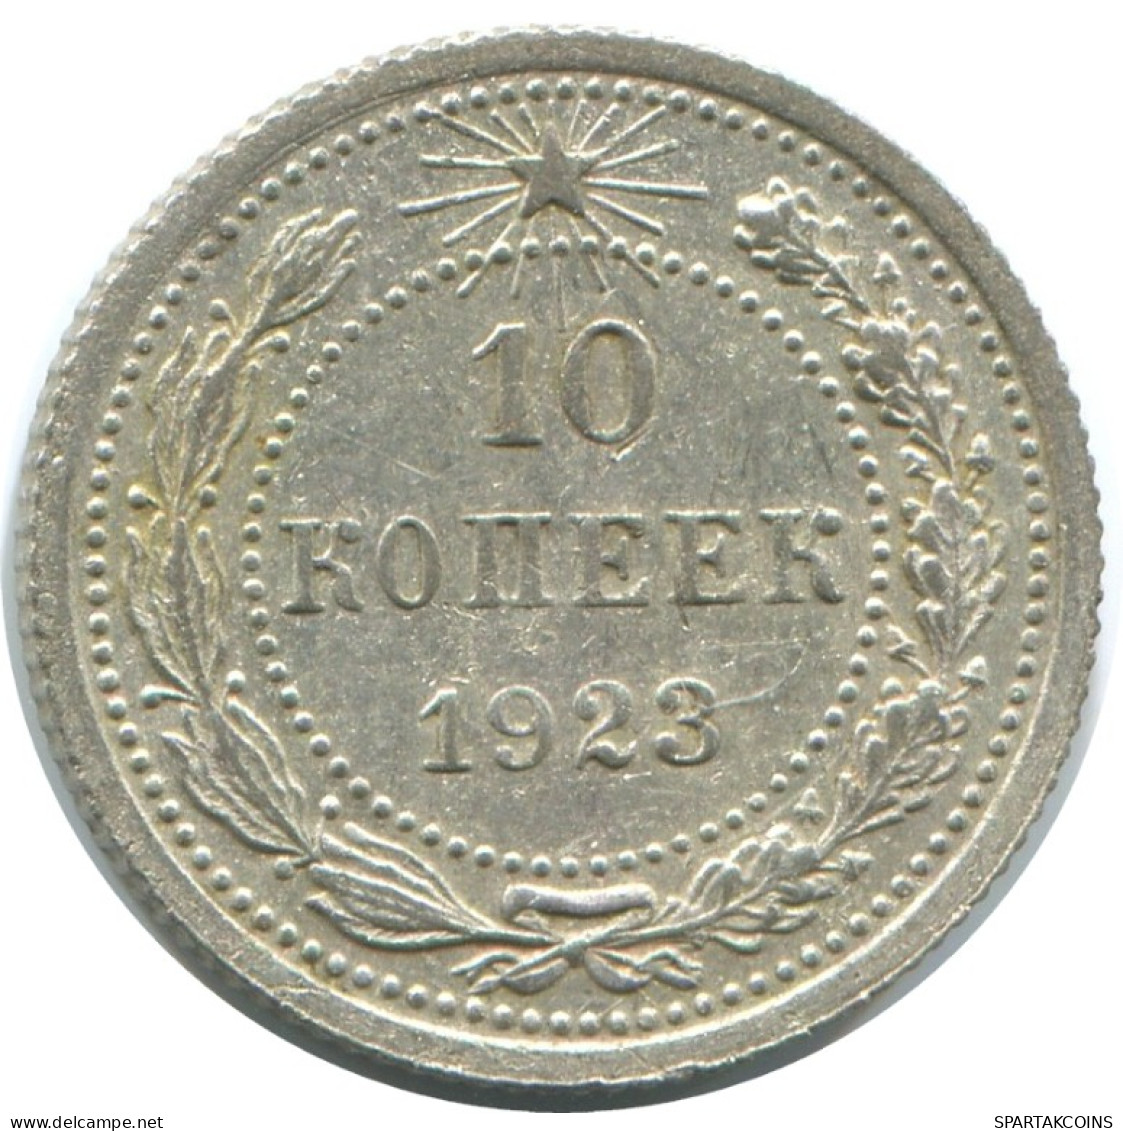 10 KOPEKS 1923 RUSSLAND RUSSIA RSFSR SILBER Münze HIGH GRADE #AE992.4.D.A - Russland